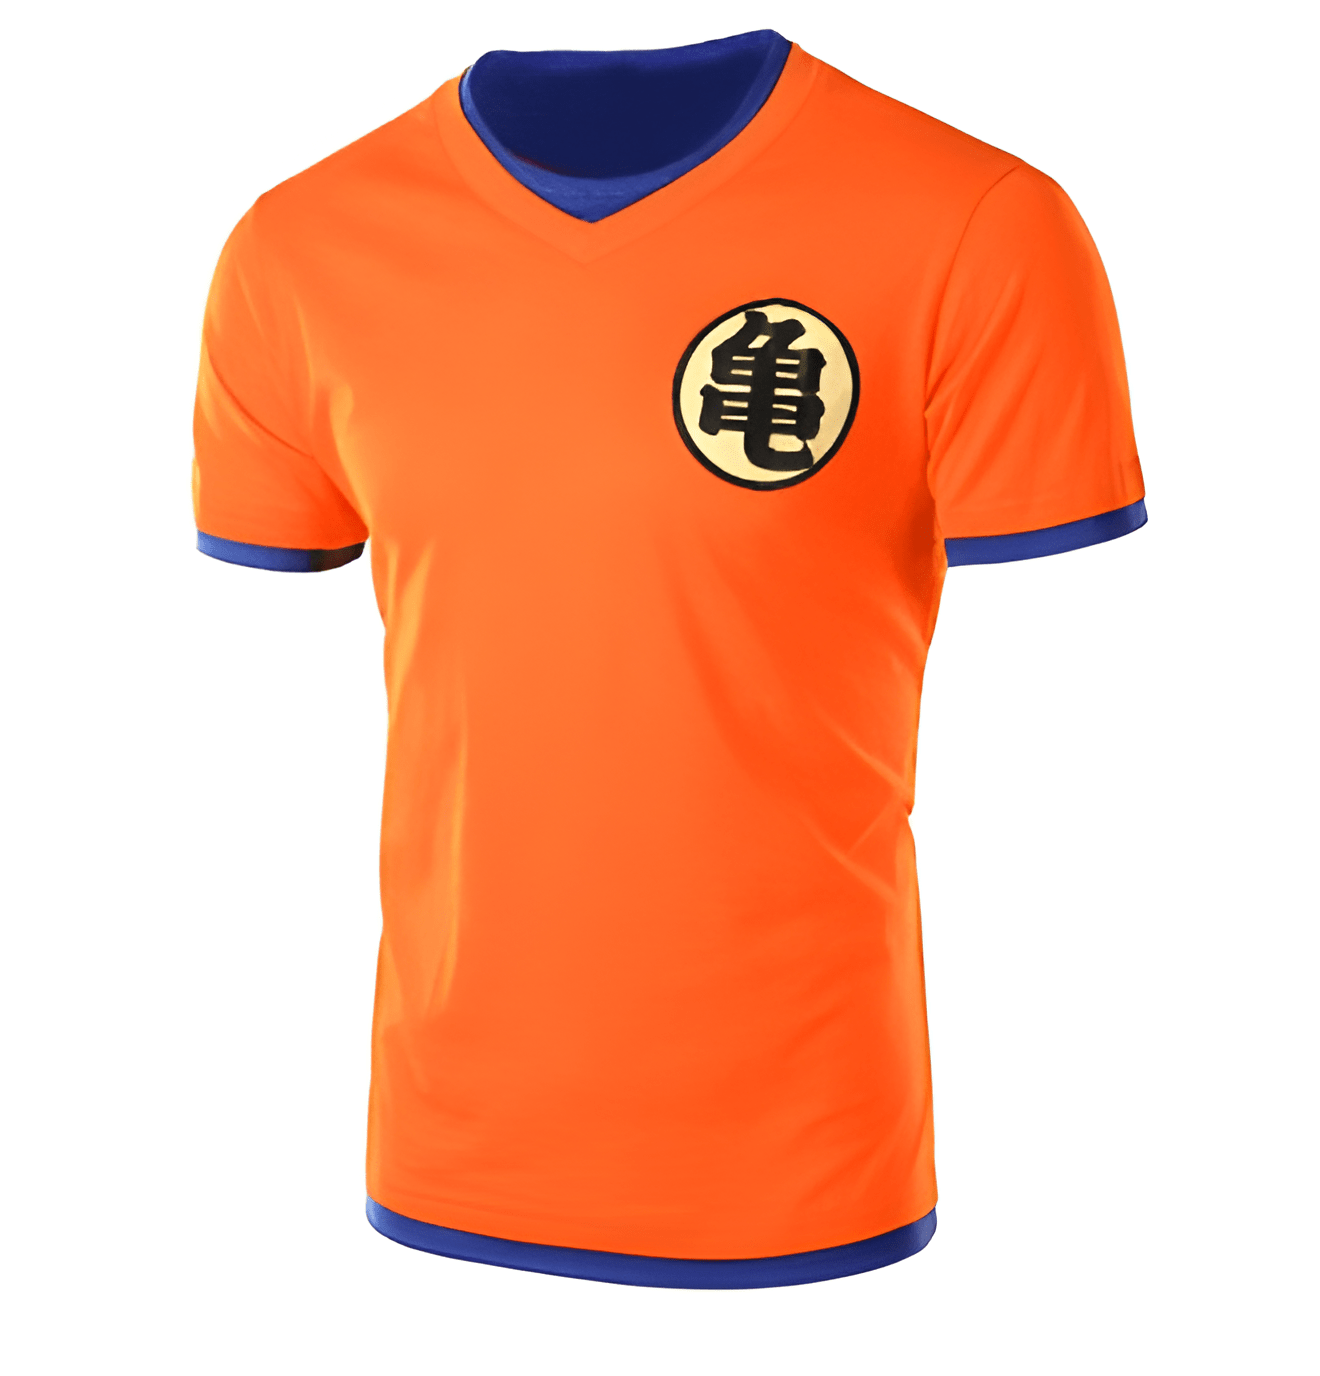 Dragon Ball Z T-Shirt Orange Goku - DBZ